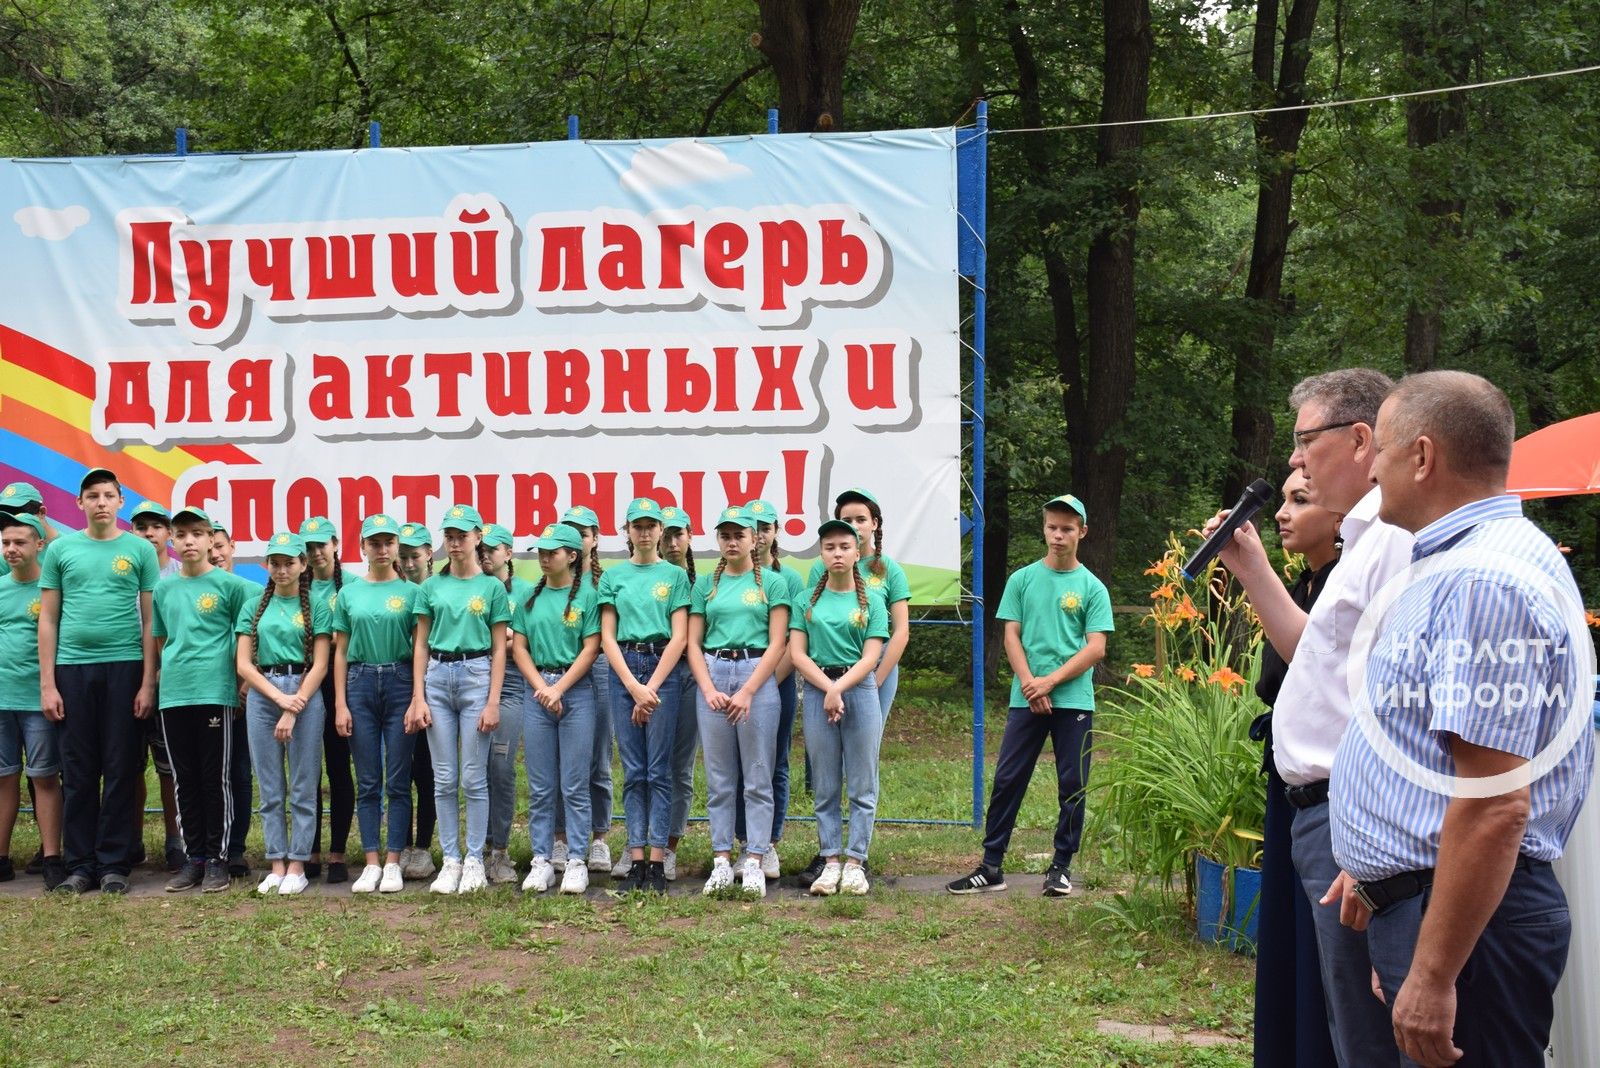 Глава Нурлатского района Алмаз Ахметшин поздравил детей в «Заречном» с началом новой смены